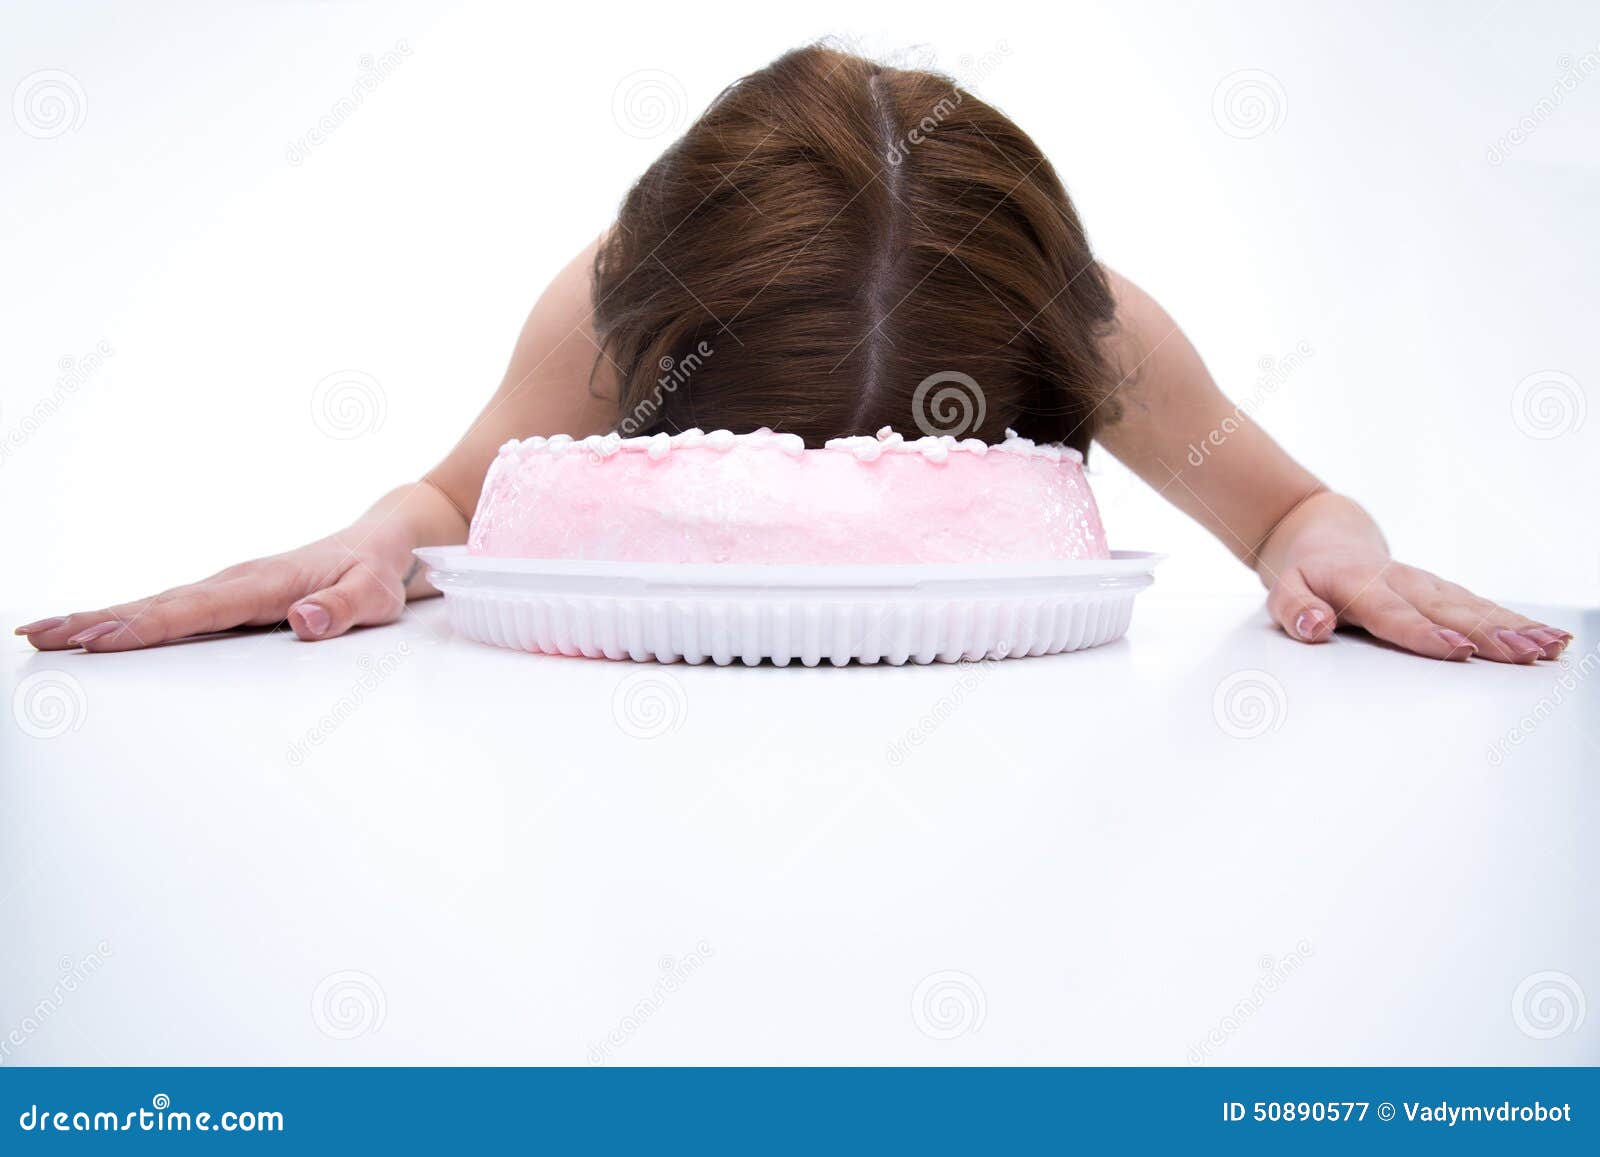 Девушка лицом в торт штырь. Торт с лицом женщины. Торт с лицом девочки. С днём рождения торт в лицо девушке.